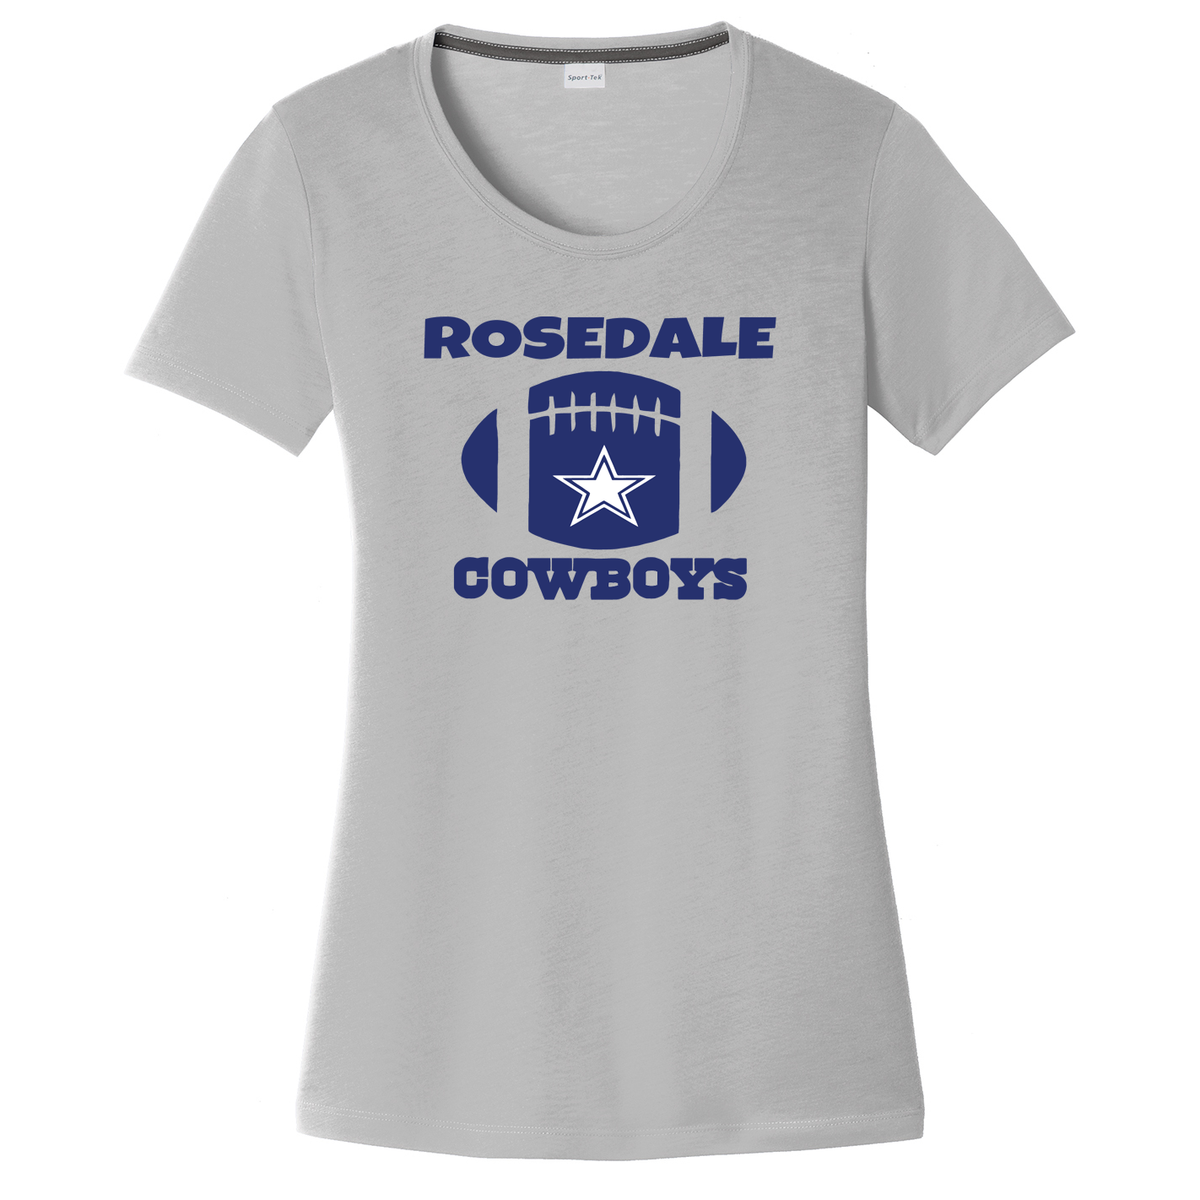 Rosedale Cowboys Women's CottonTouch Performance T-Shirt